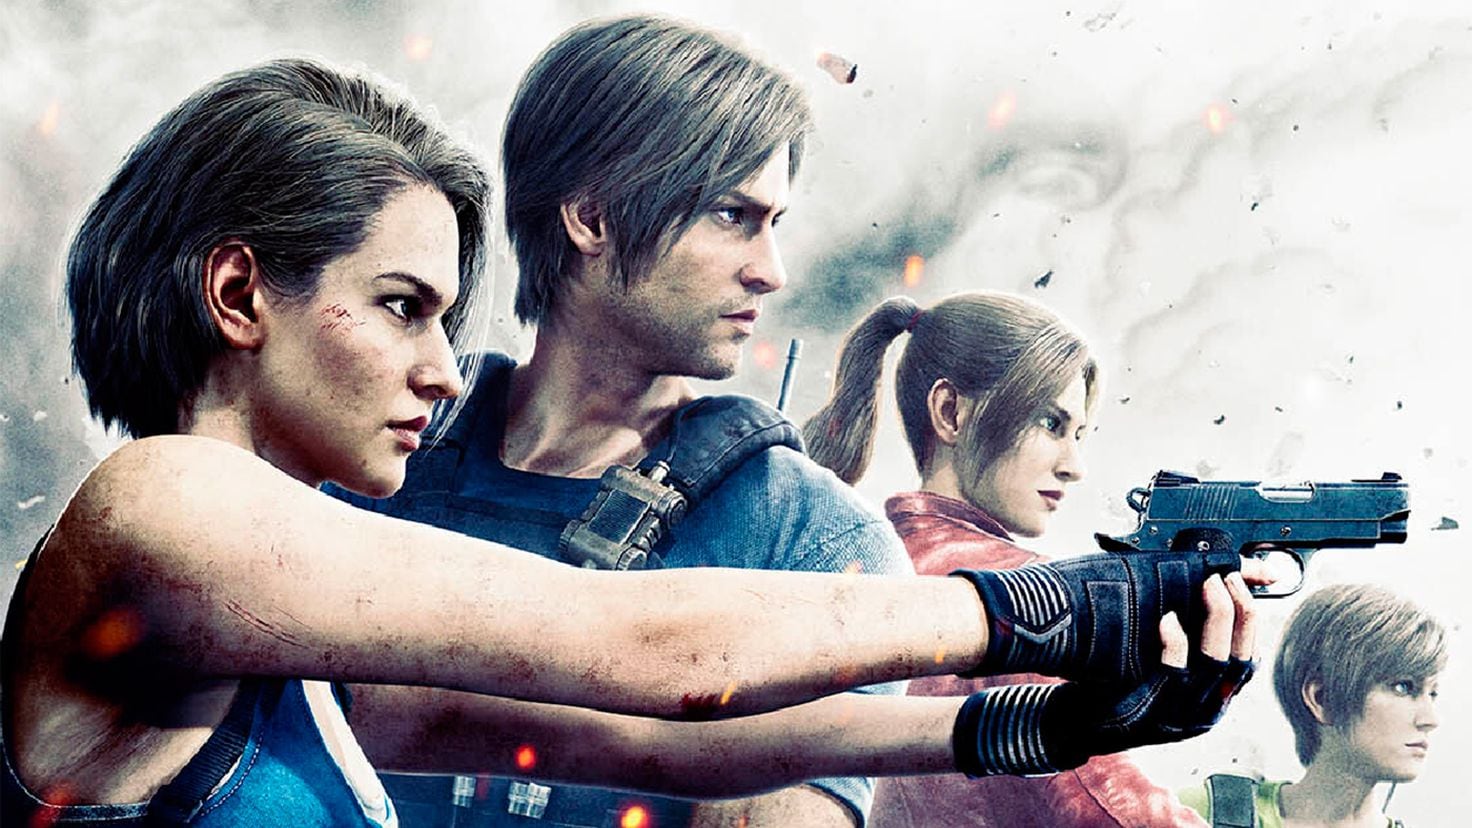 Call of Duty e Resident Evil 7 são destaques nos trailers da semana